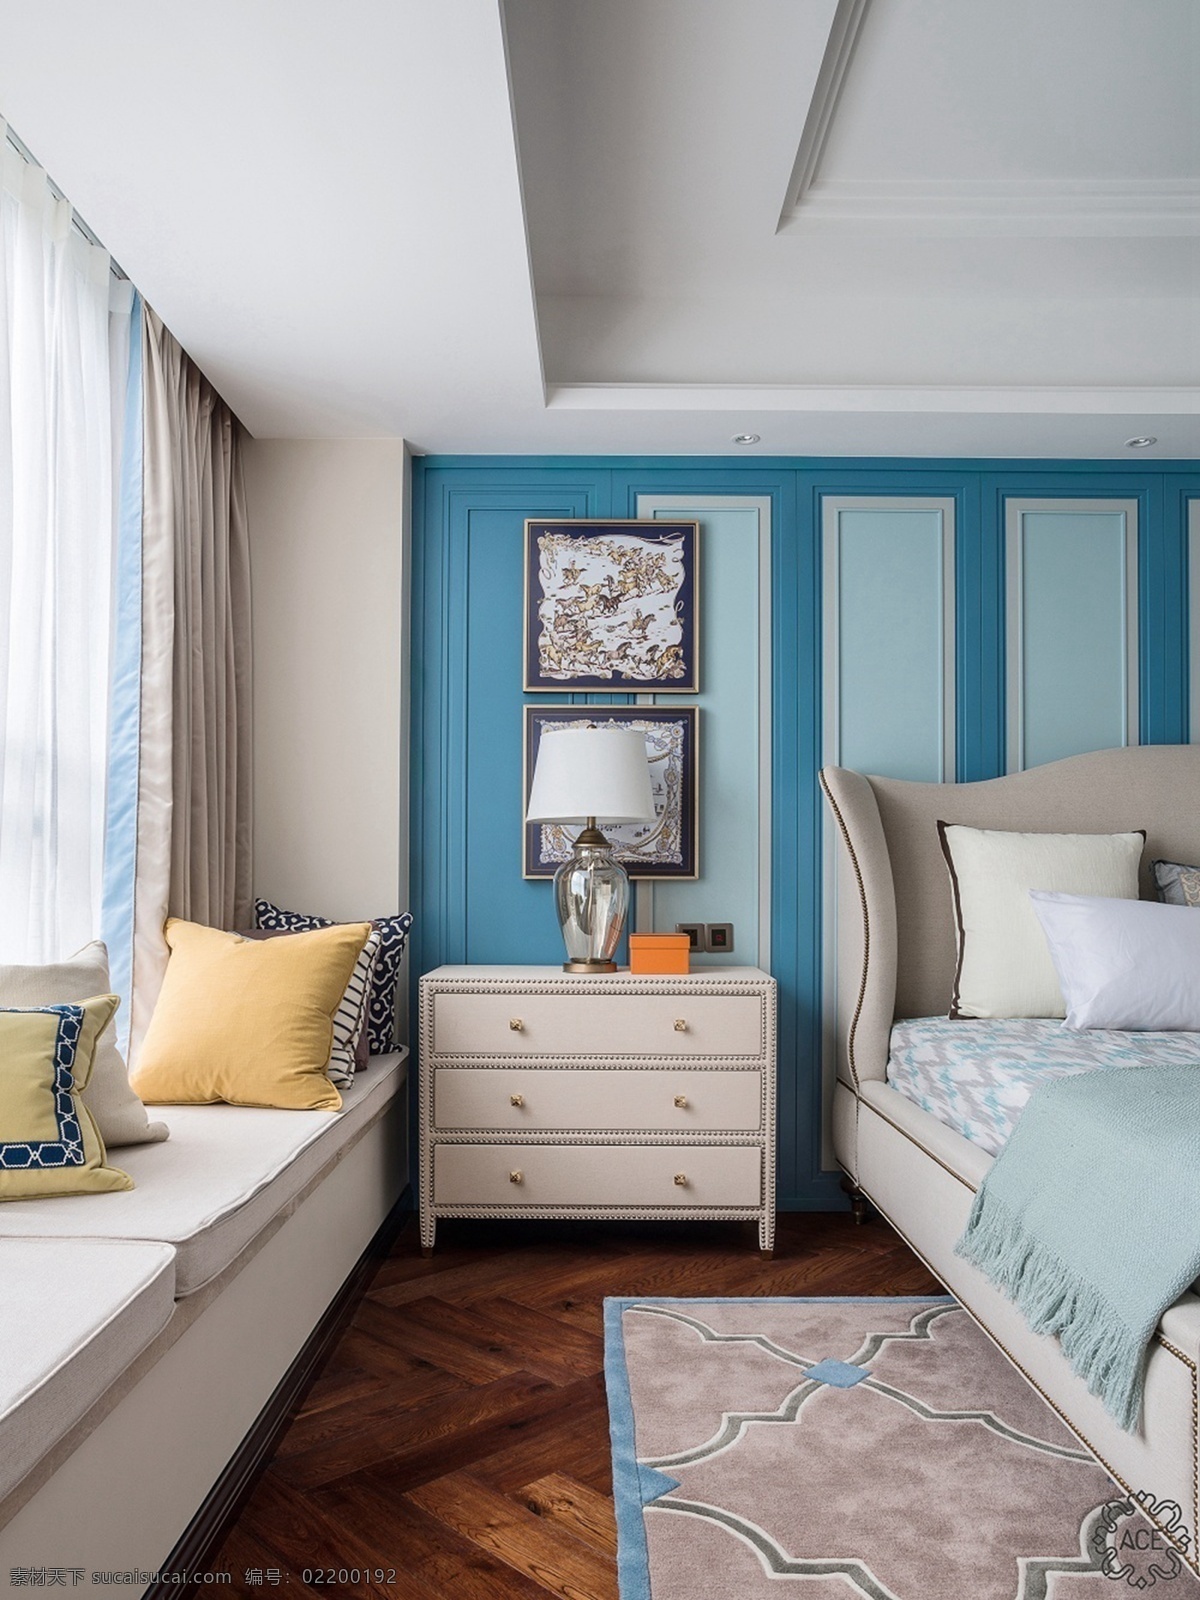 美式 时尚 卧室 蓝色 背景 墙 设计图 家居 家居生活 室内设计 装修 室内 家具 装修设计 环境设计 背景墙